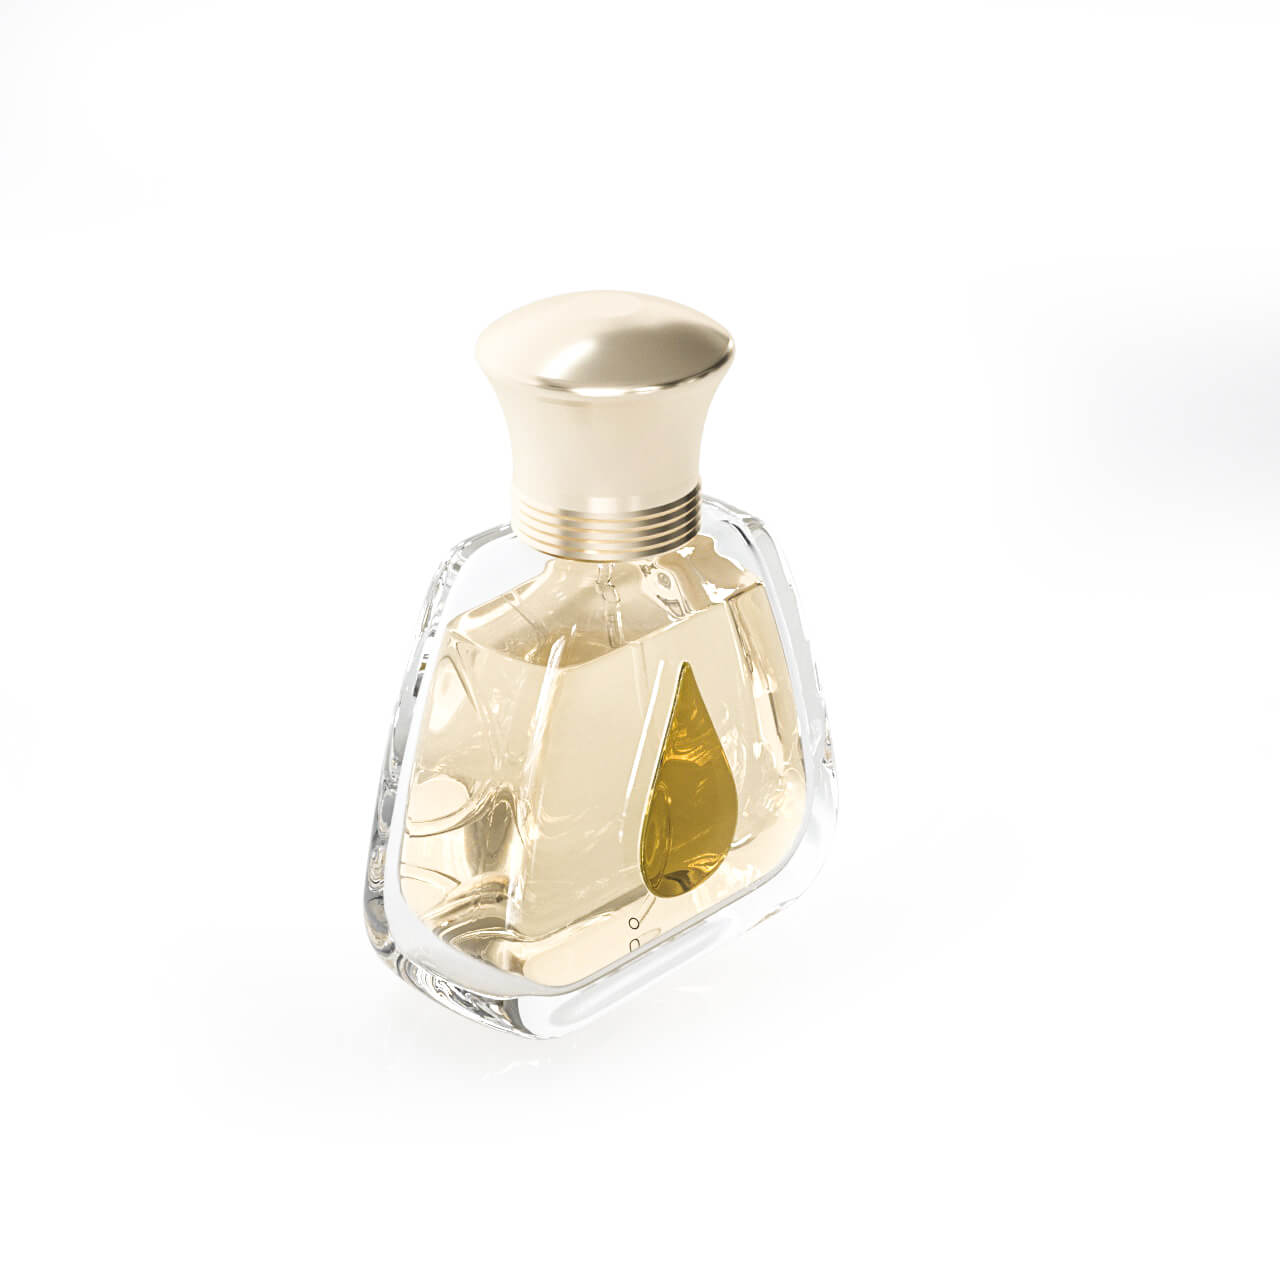 Drop shape perfume bottle (4)